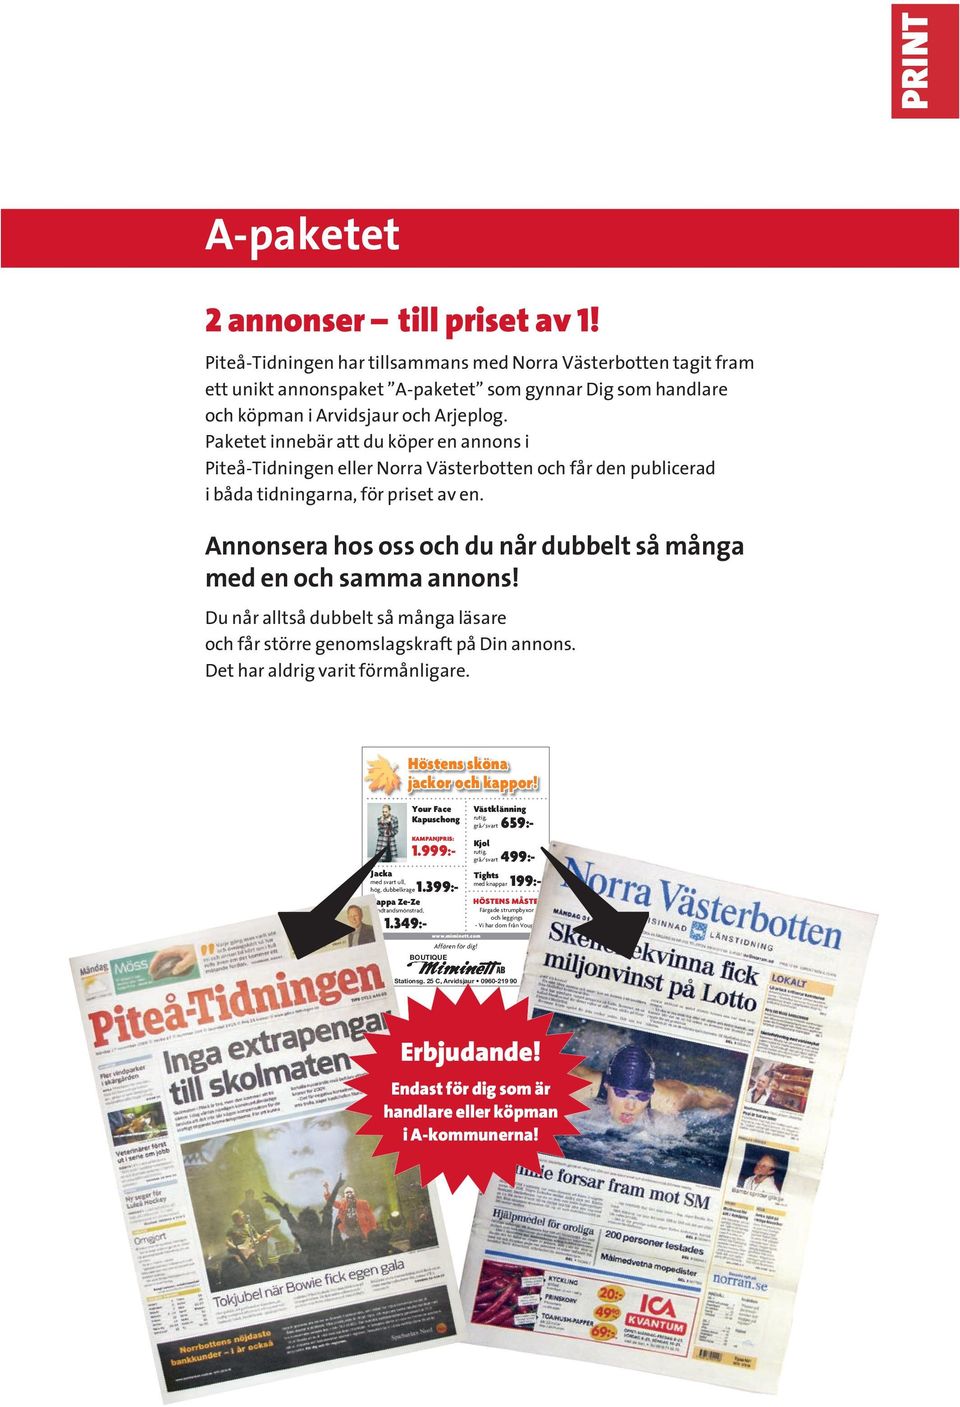 Paketet innebär att du köper en annons i Piteå-Tidningen eller Norra Västerbotten och får den publicerad i båda tidningarna, för priset av en.